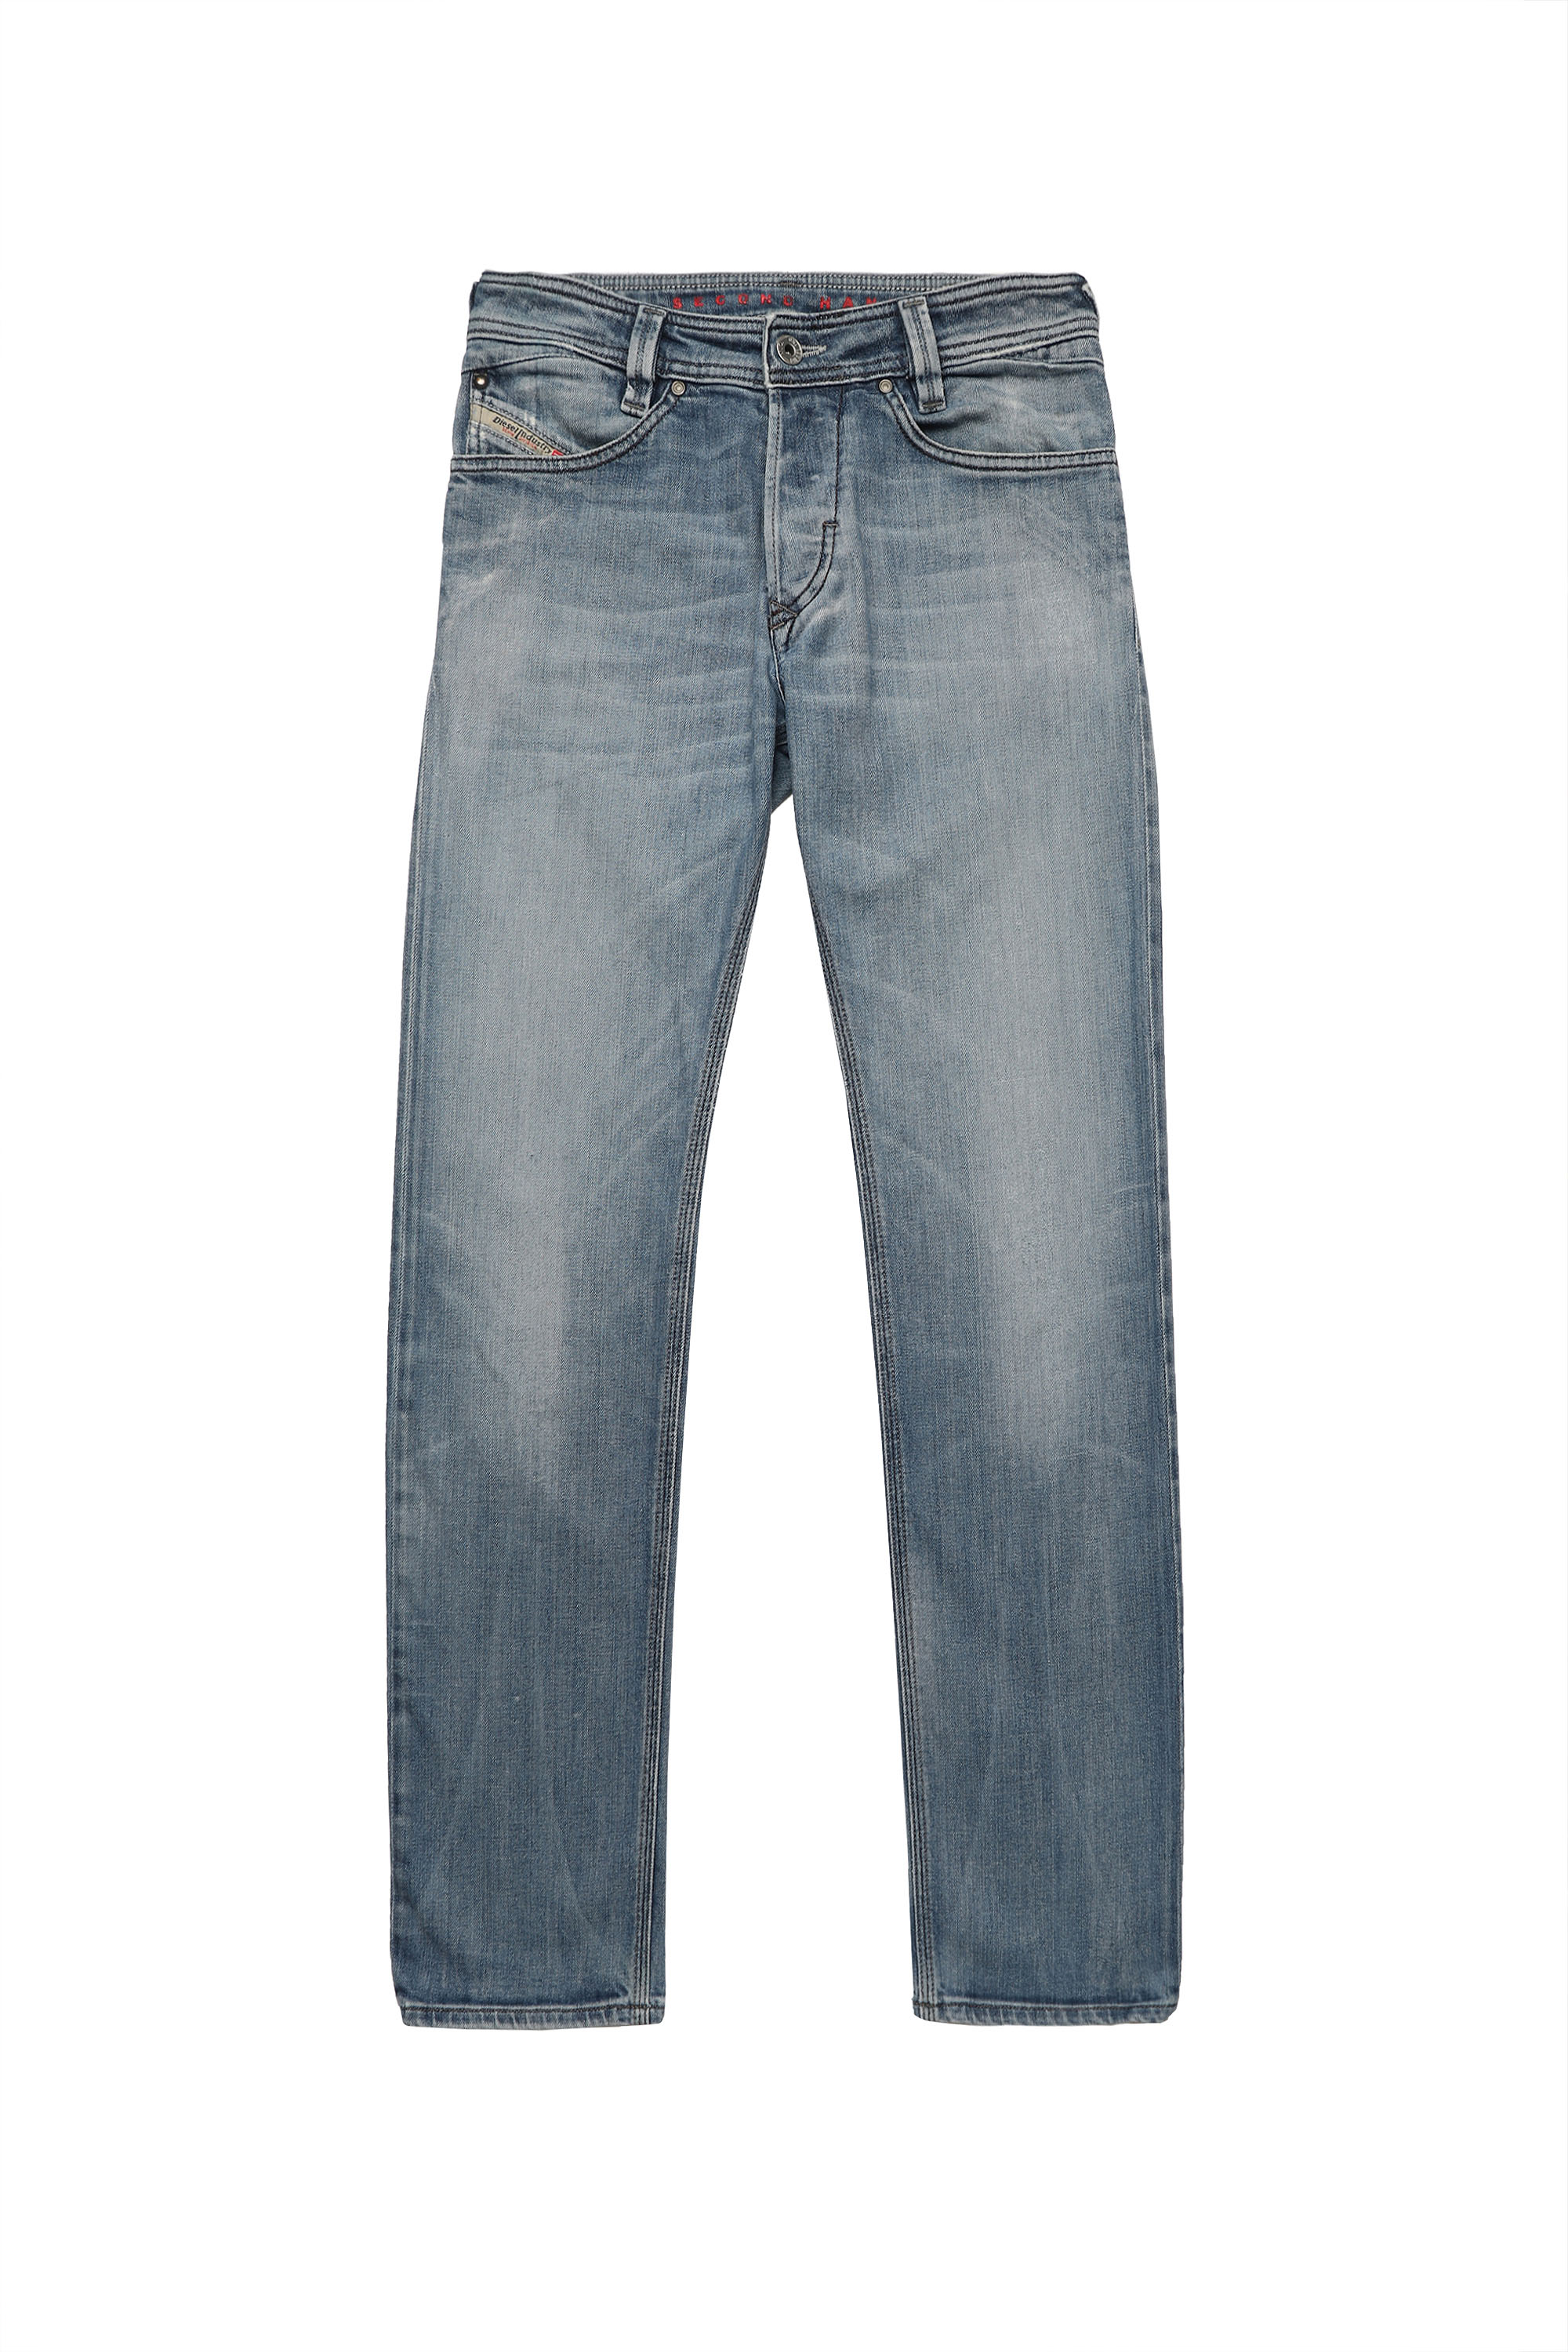 SLAMMER, Medium blue - Jeans